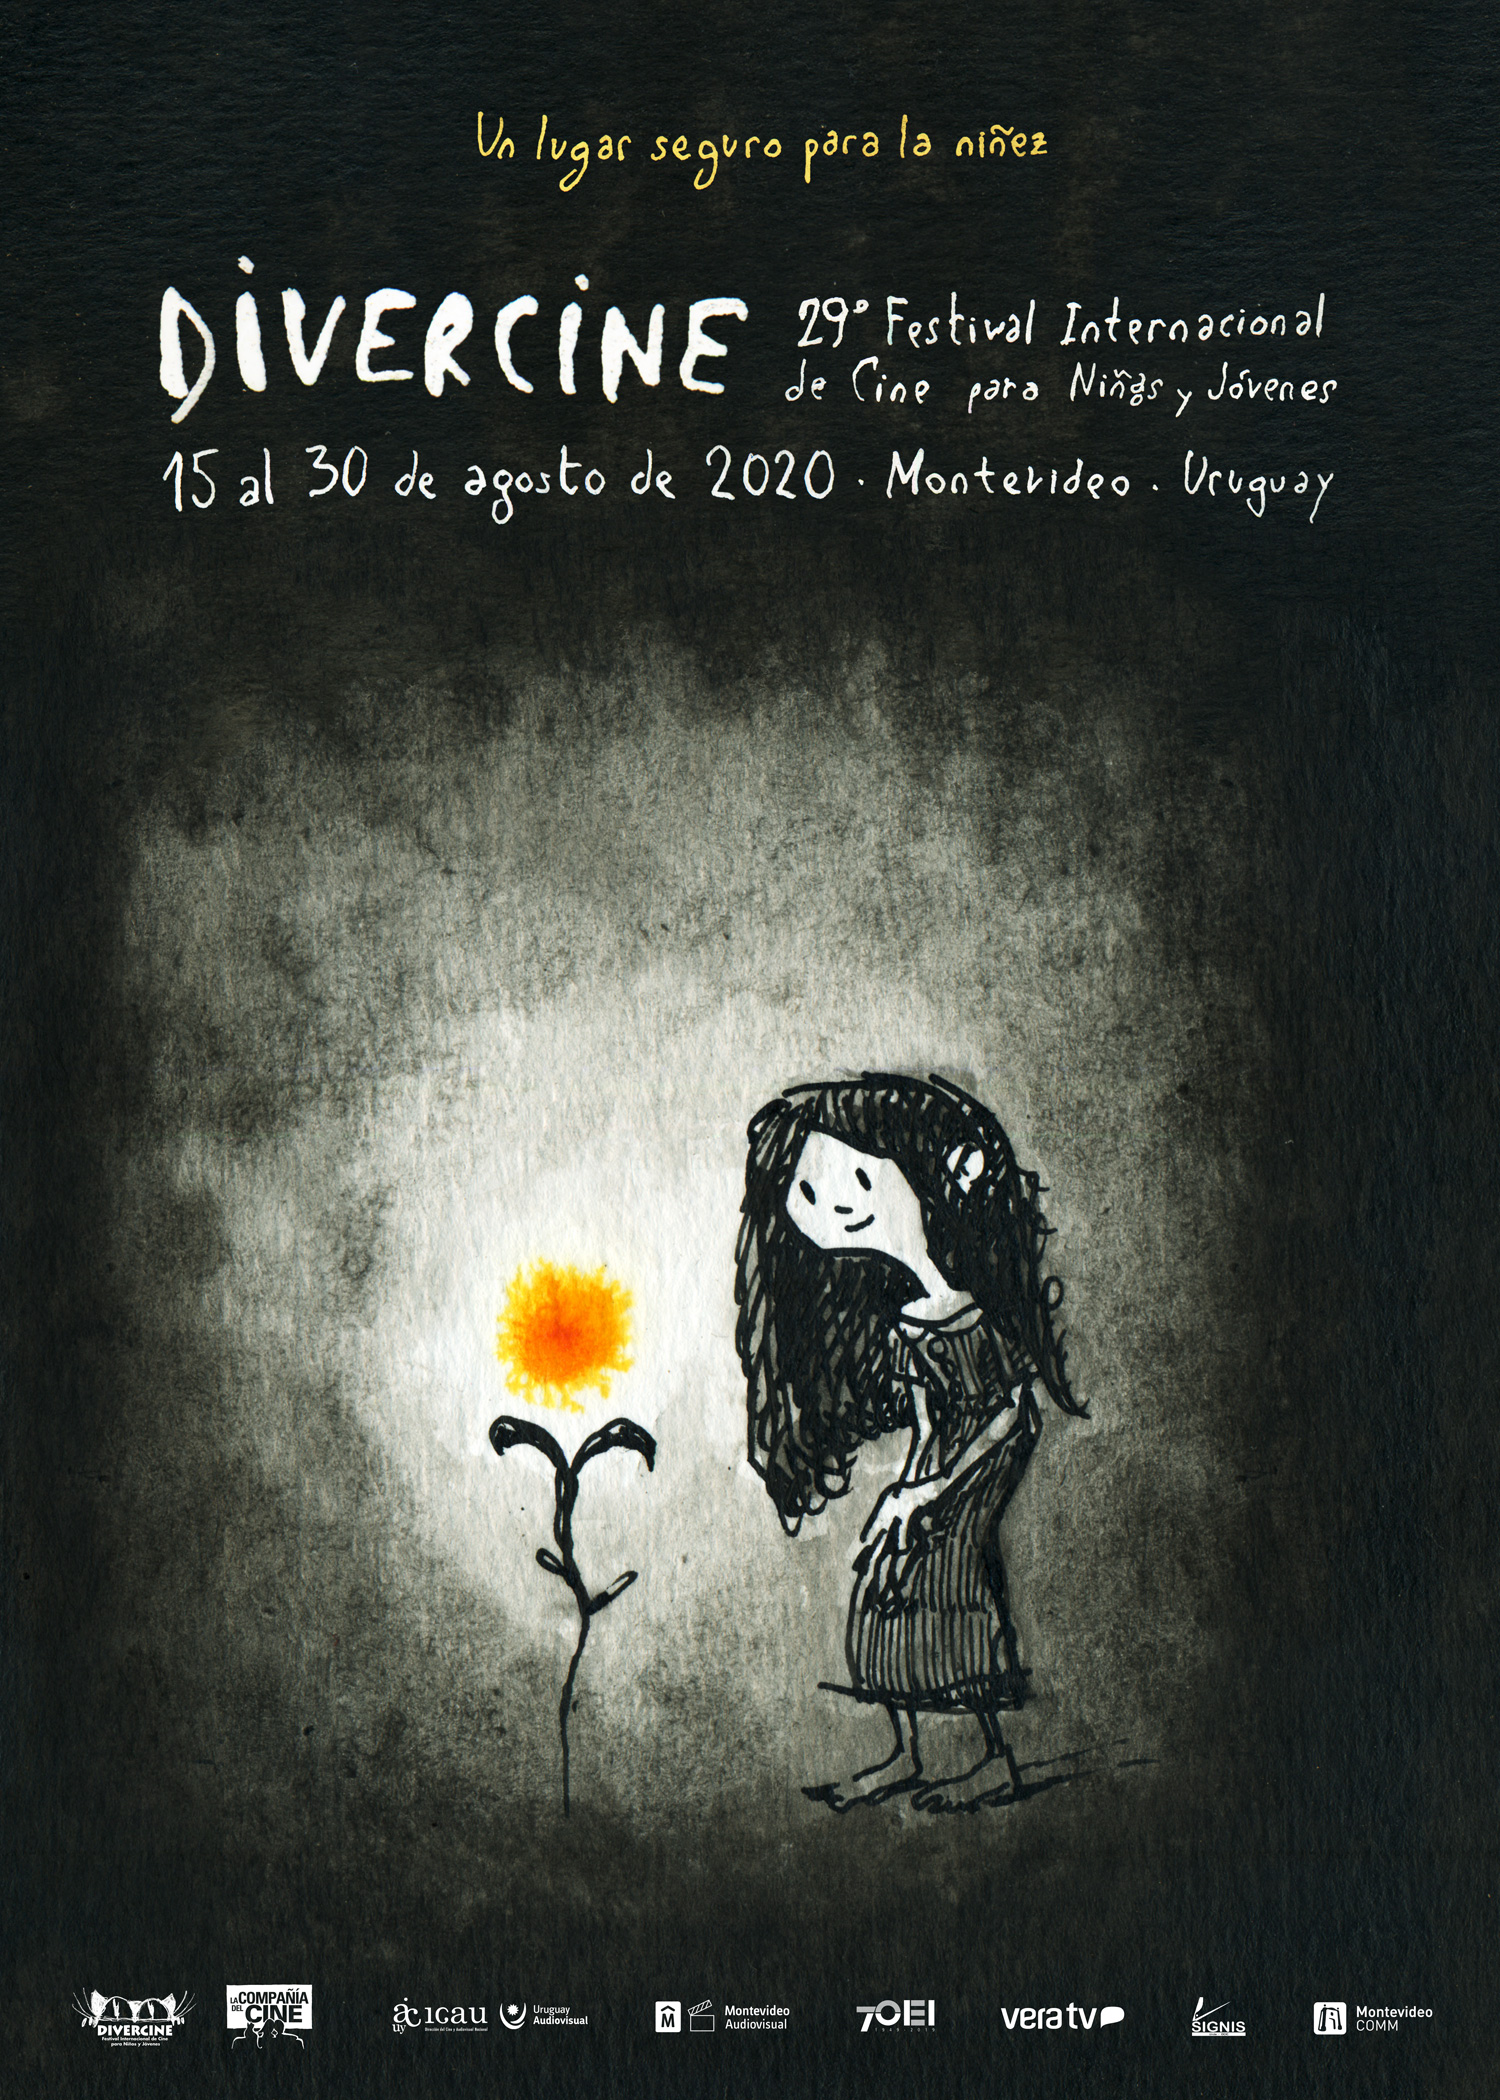 OEI apoya edición online de Divercine que comienza el 15 de agosto